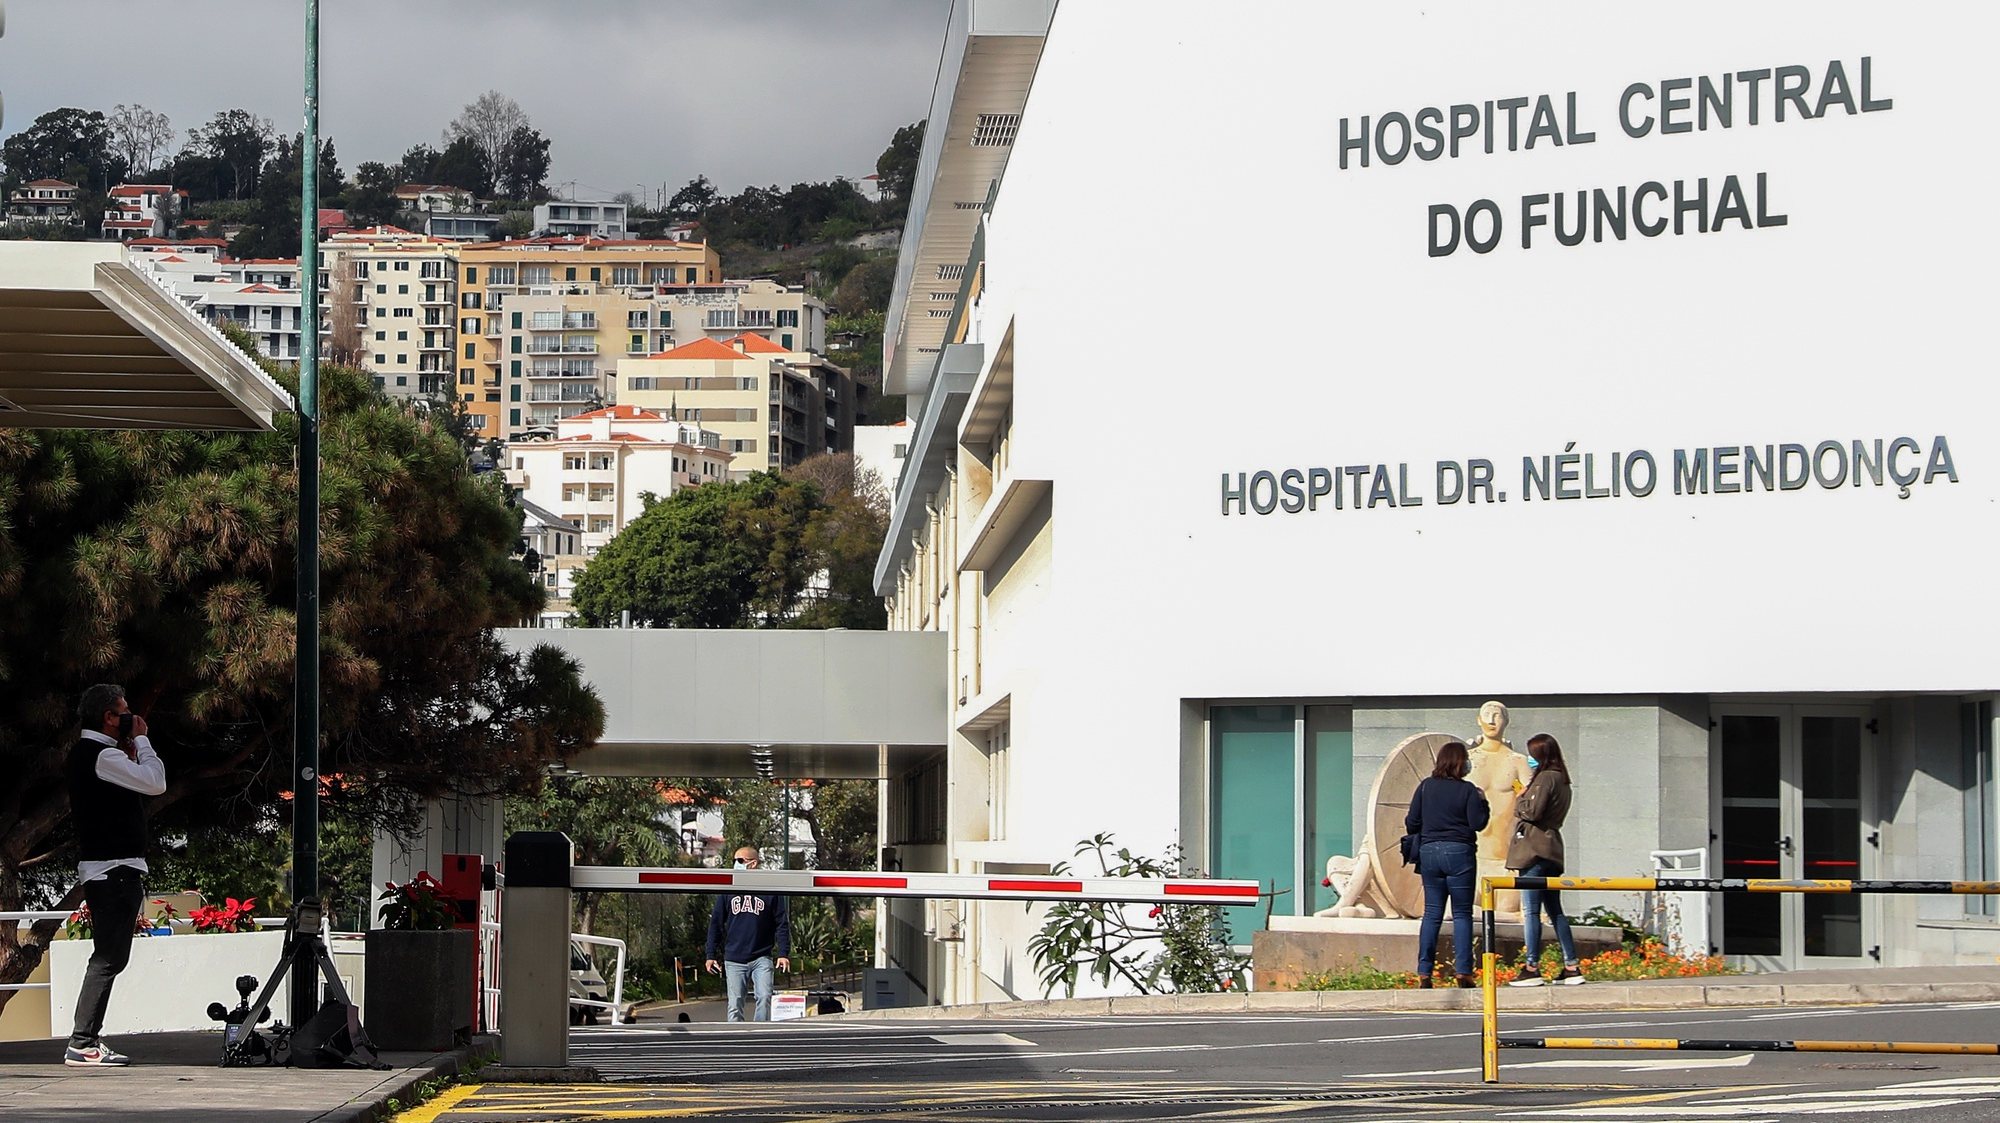 Fachada do Hospital Nélio Mendonça, que hoje recebeu a visita do presidente do Governo Regional da Madeira, para ver a nova unidade de internamento covid-19 da instituição hospitalar, no Funchal, 28 de janeiro de 2021. HOMEM DE GOUVEIA/LUSA